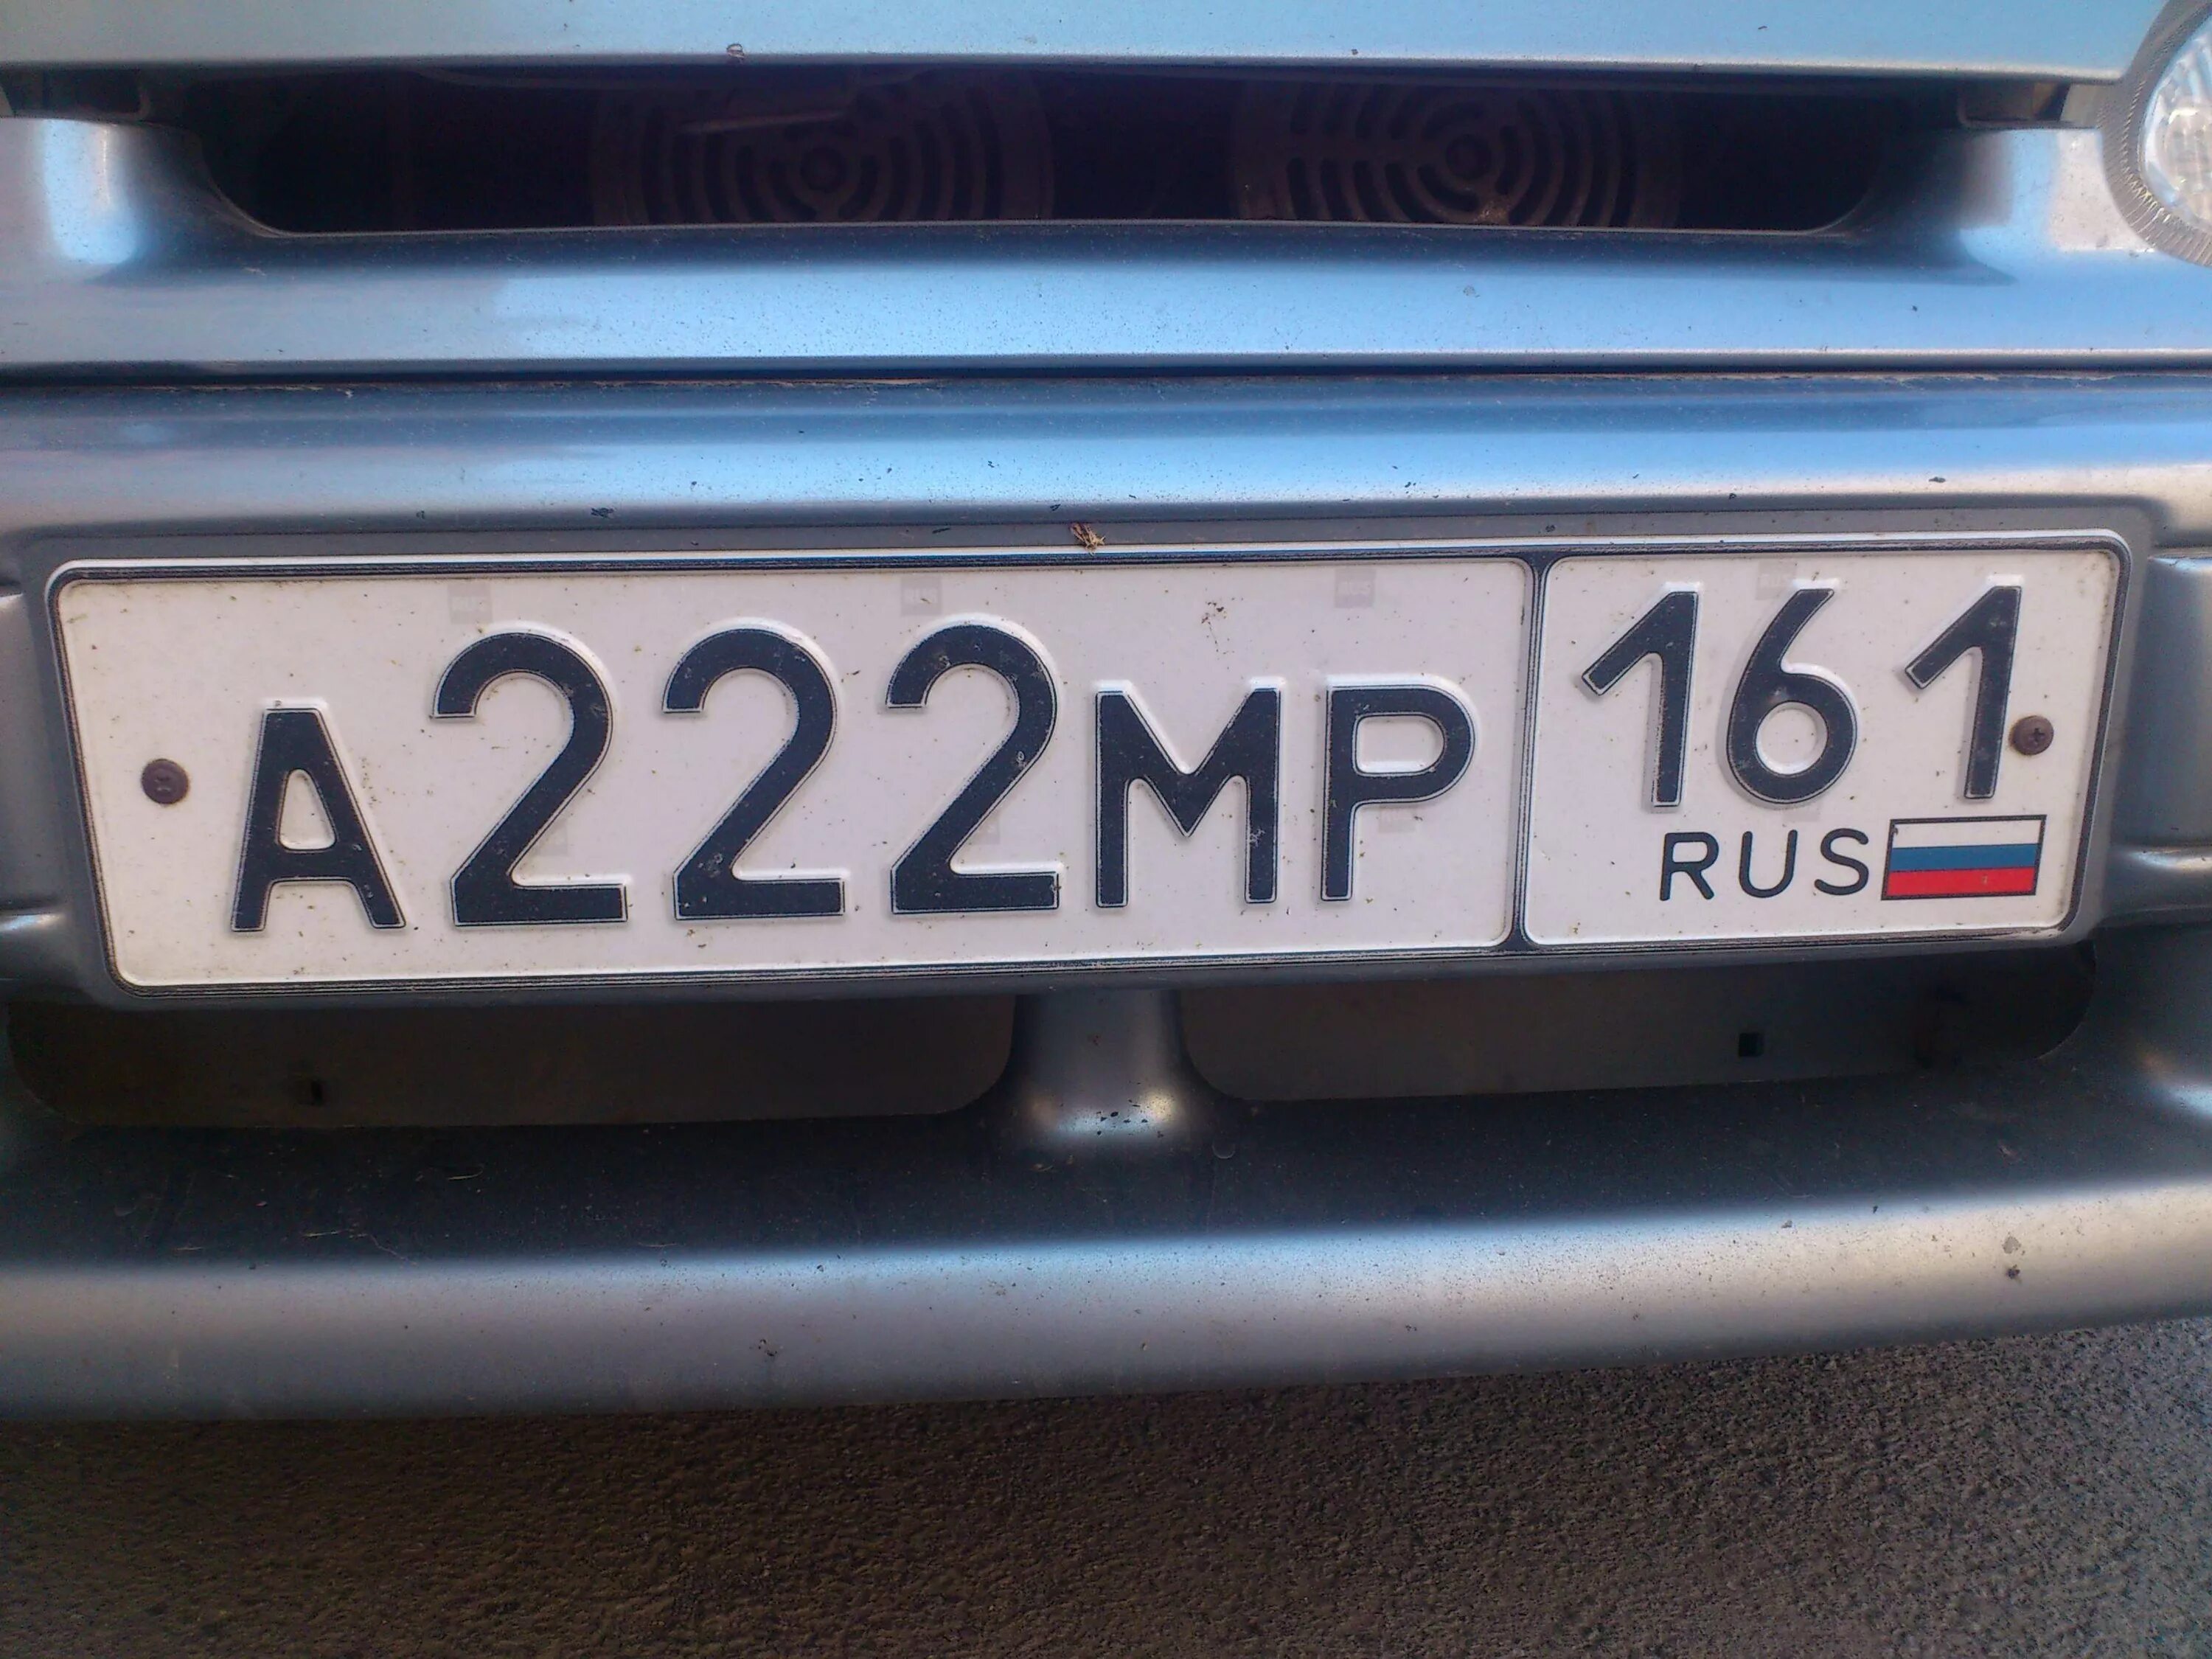 Автомобильный номер. Номерной знак автомобиля. Российские номера машин. Государственный номер автомобиля. Nomer